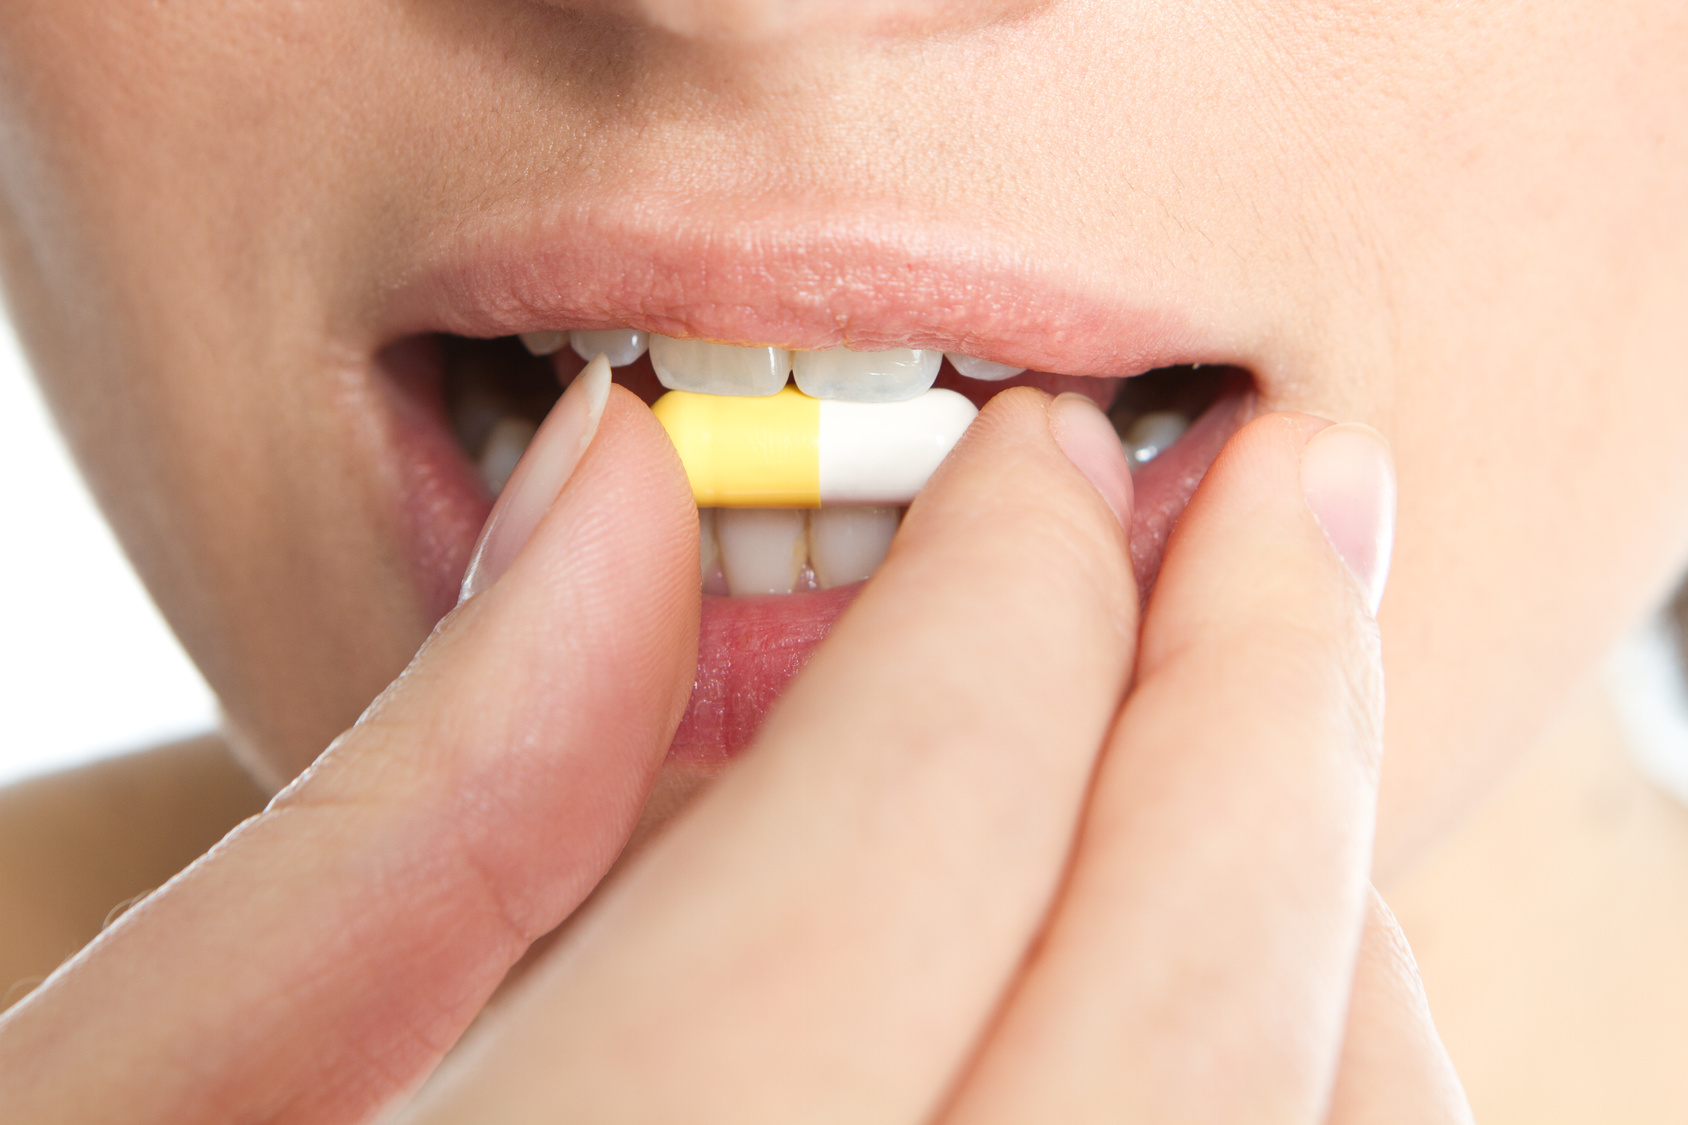 Das Bild zeigt den Mund einer Frau. Mit ihrer rechten Hand führt sie eine Tablette an ihren Mund. 